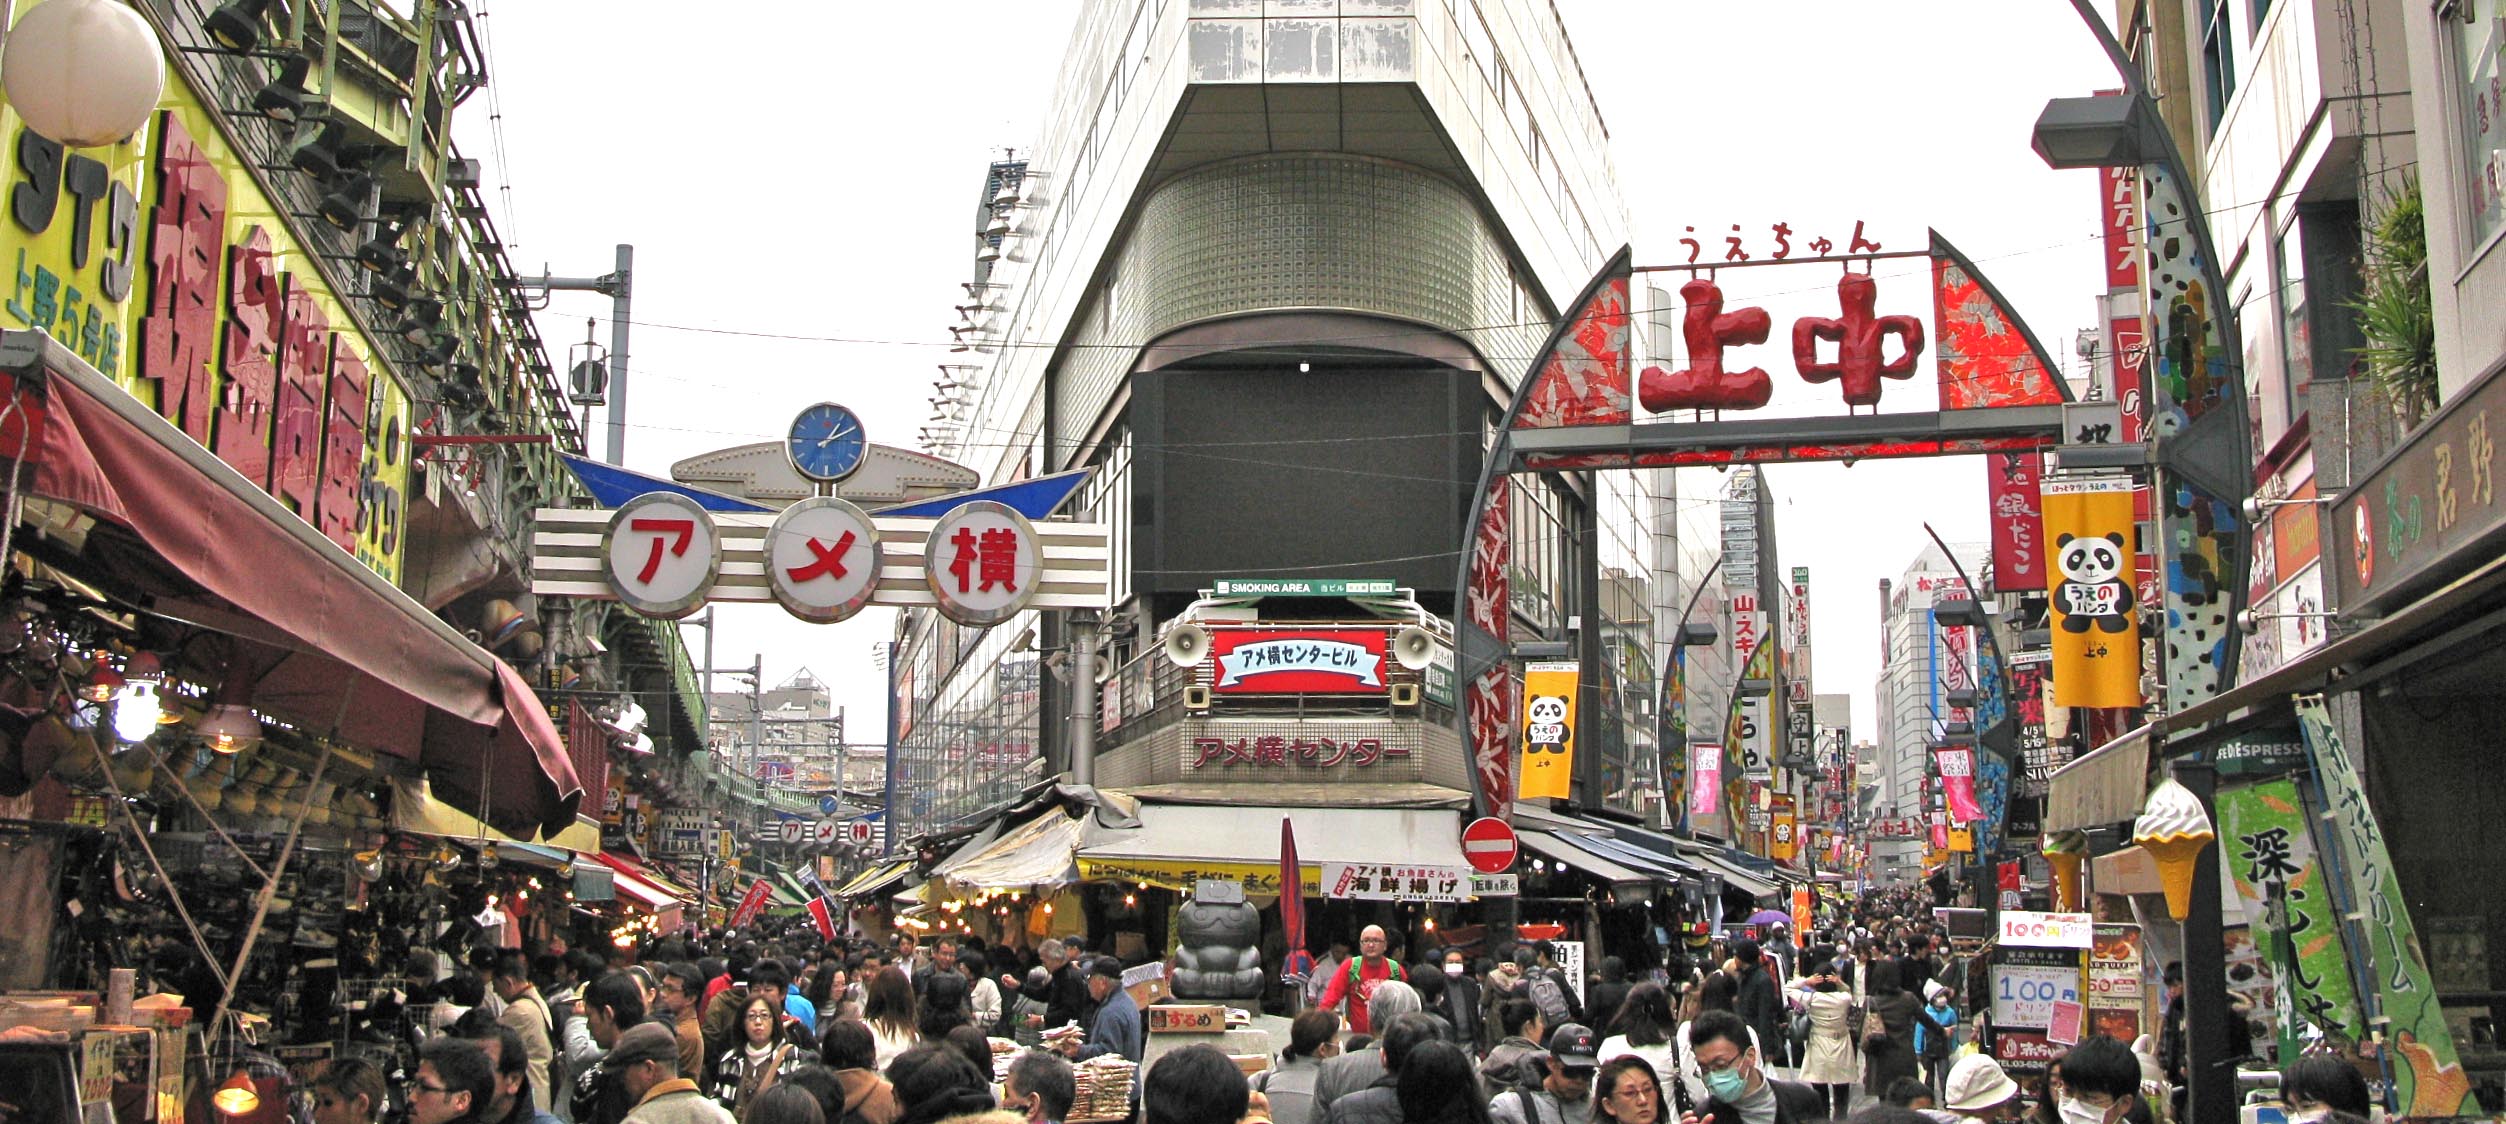 10 ตลาดญี่ปุ่นที่น่าสนใจ-ตลาดอะเมโยโกะ